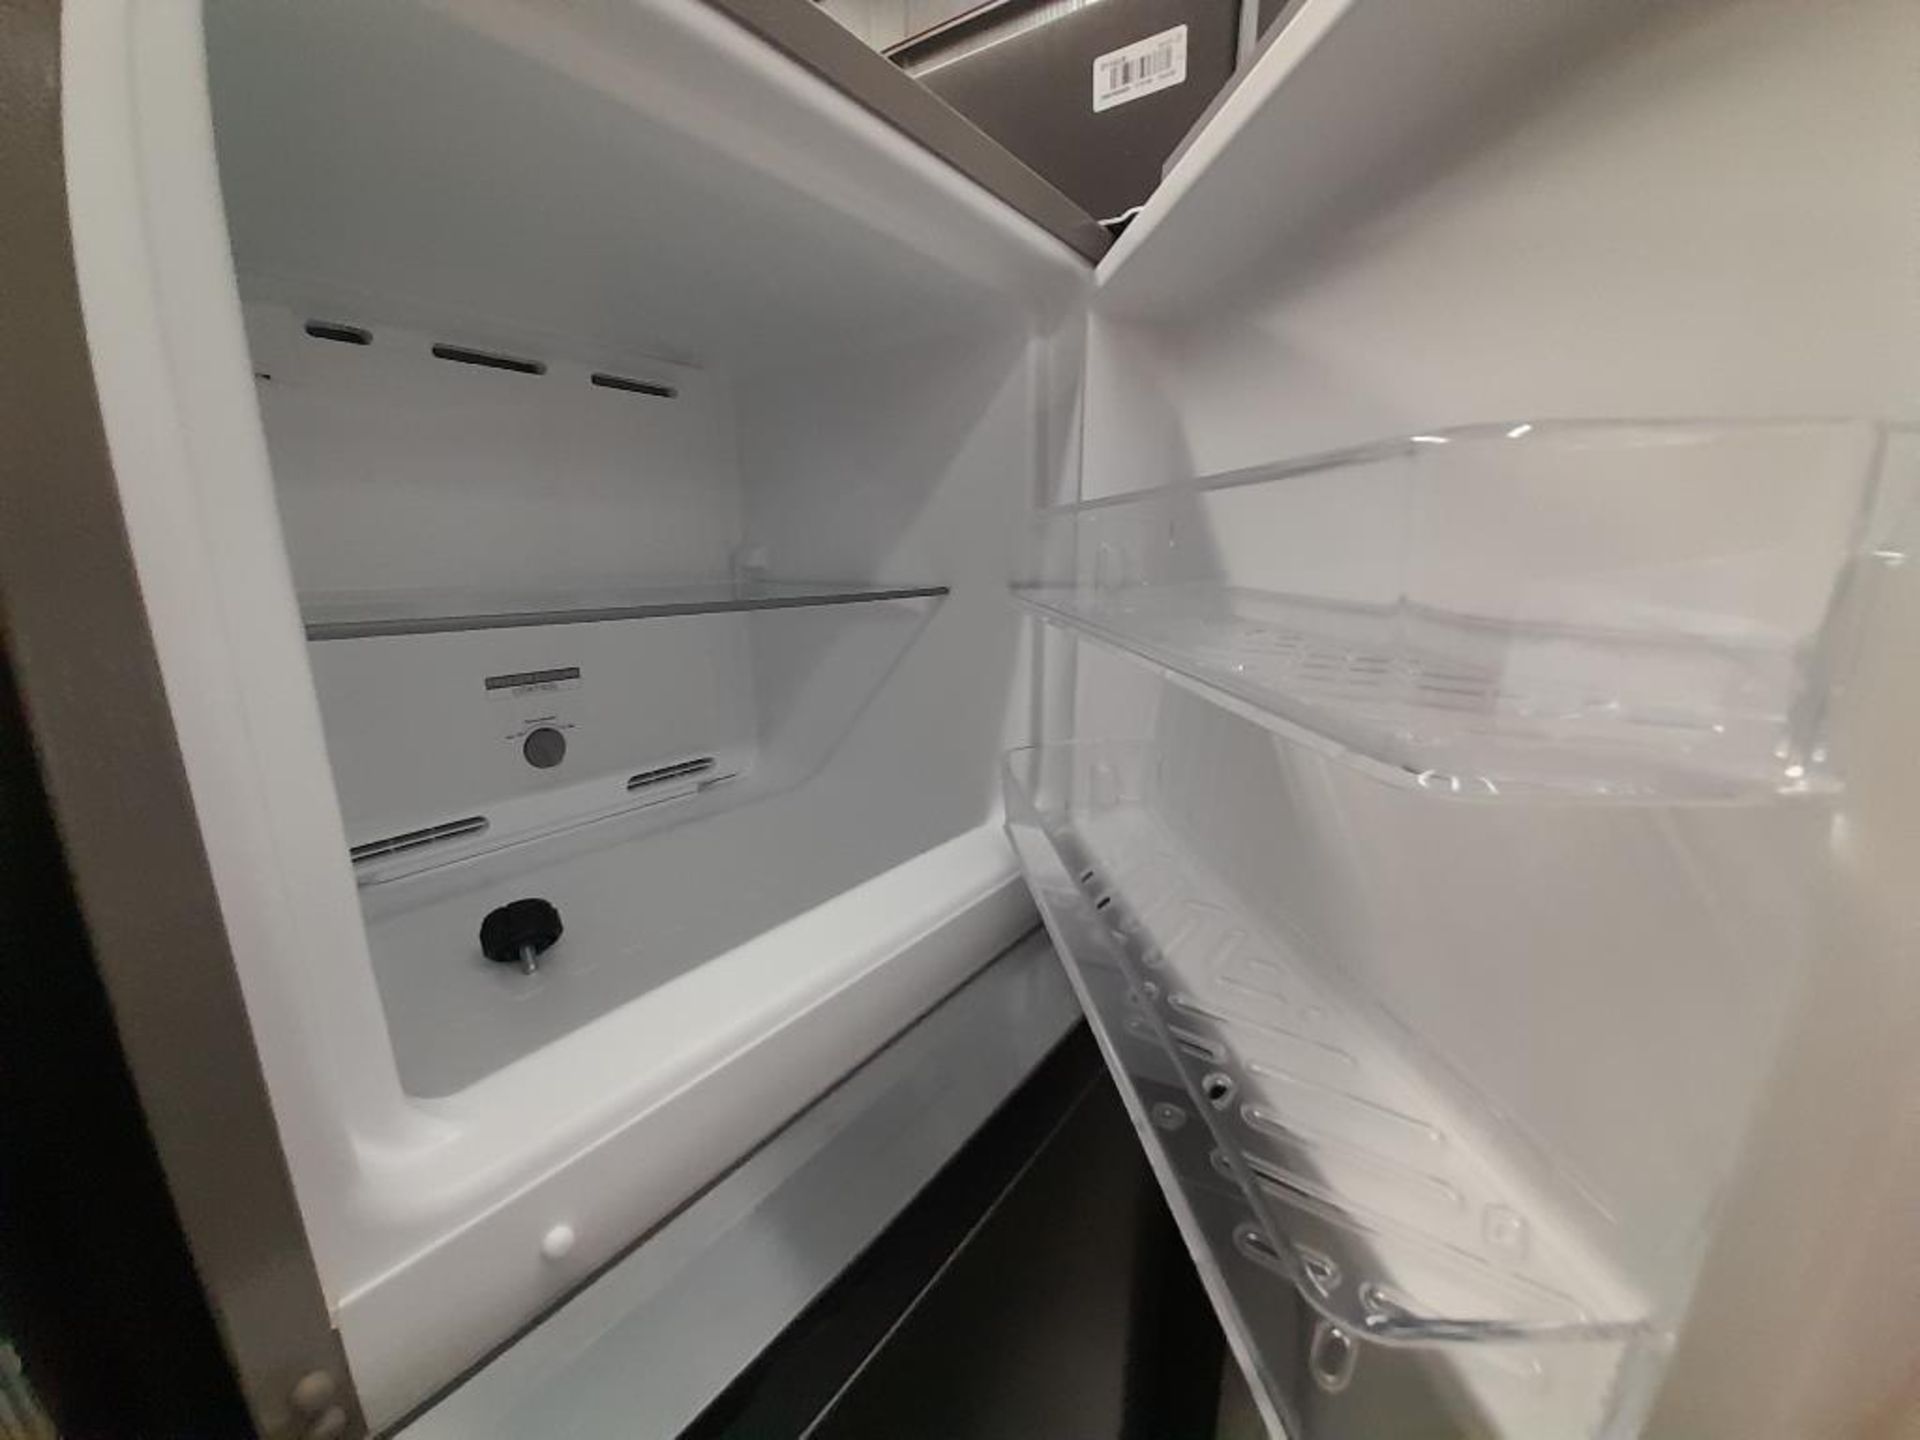 Lote de 2 refrigeradores contiene: 1 Refrigerador Con Dispensador De Agua MABE, Modelo FJMRDA, Seri - Image 4 of 8